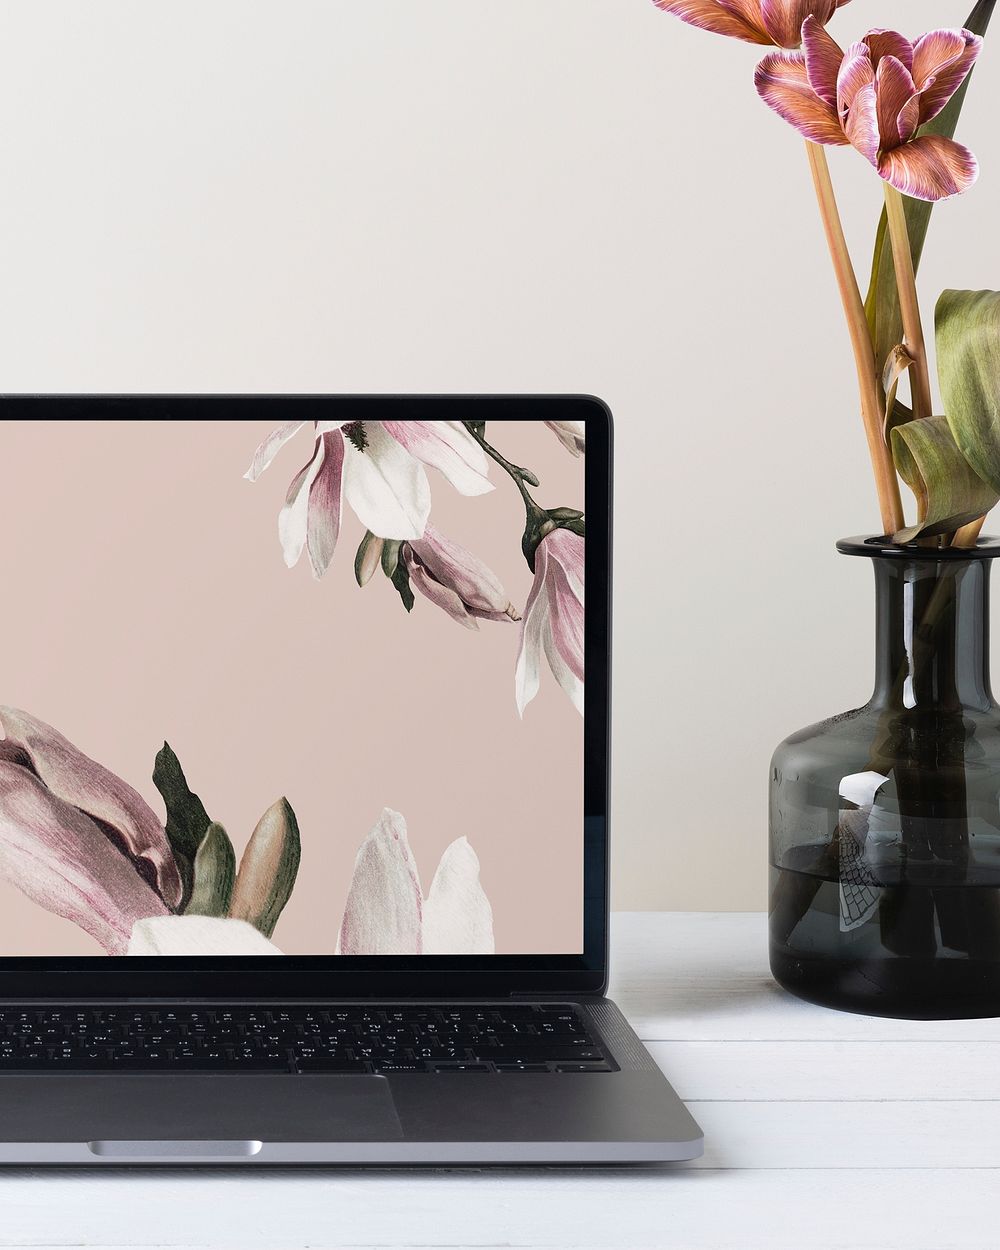 Laptop with aesthetic desktop wallpaper, flower in vase aside